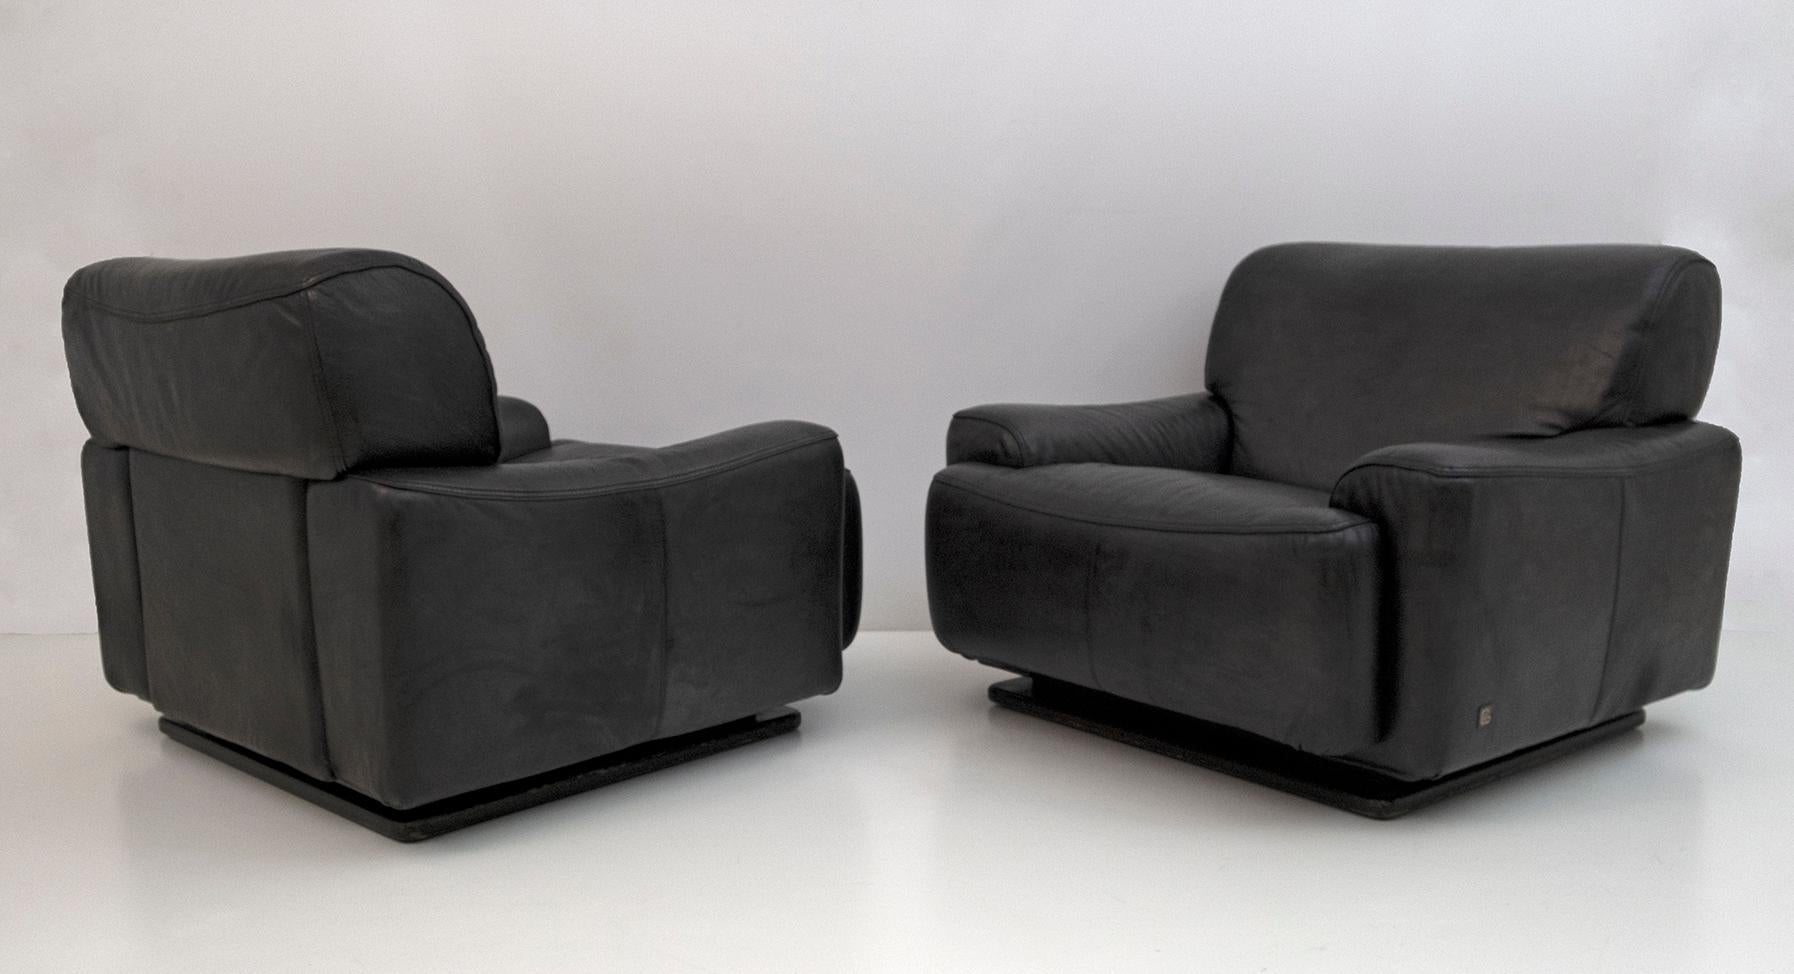 Paar Piumotto-Sessel, hergestellt von Busnelli, 1970er Jahre.
Polsterung aus echtem rauchgrauem Leder
Sockel aus schwarz lackiertem Holz.